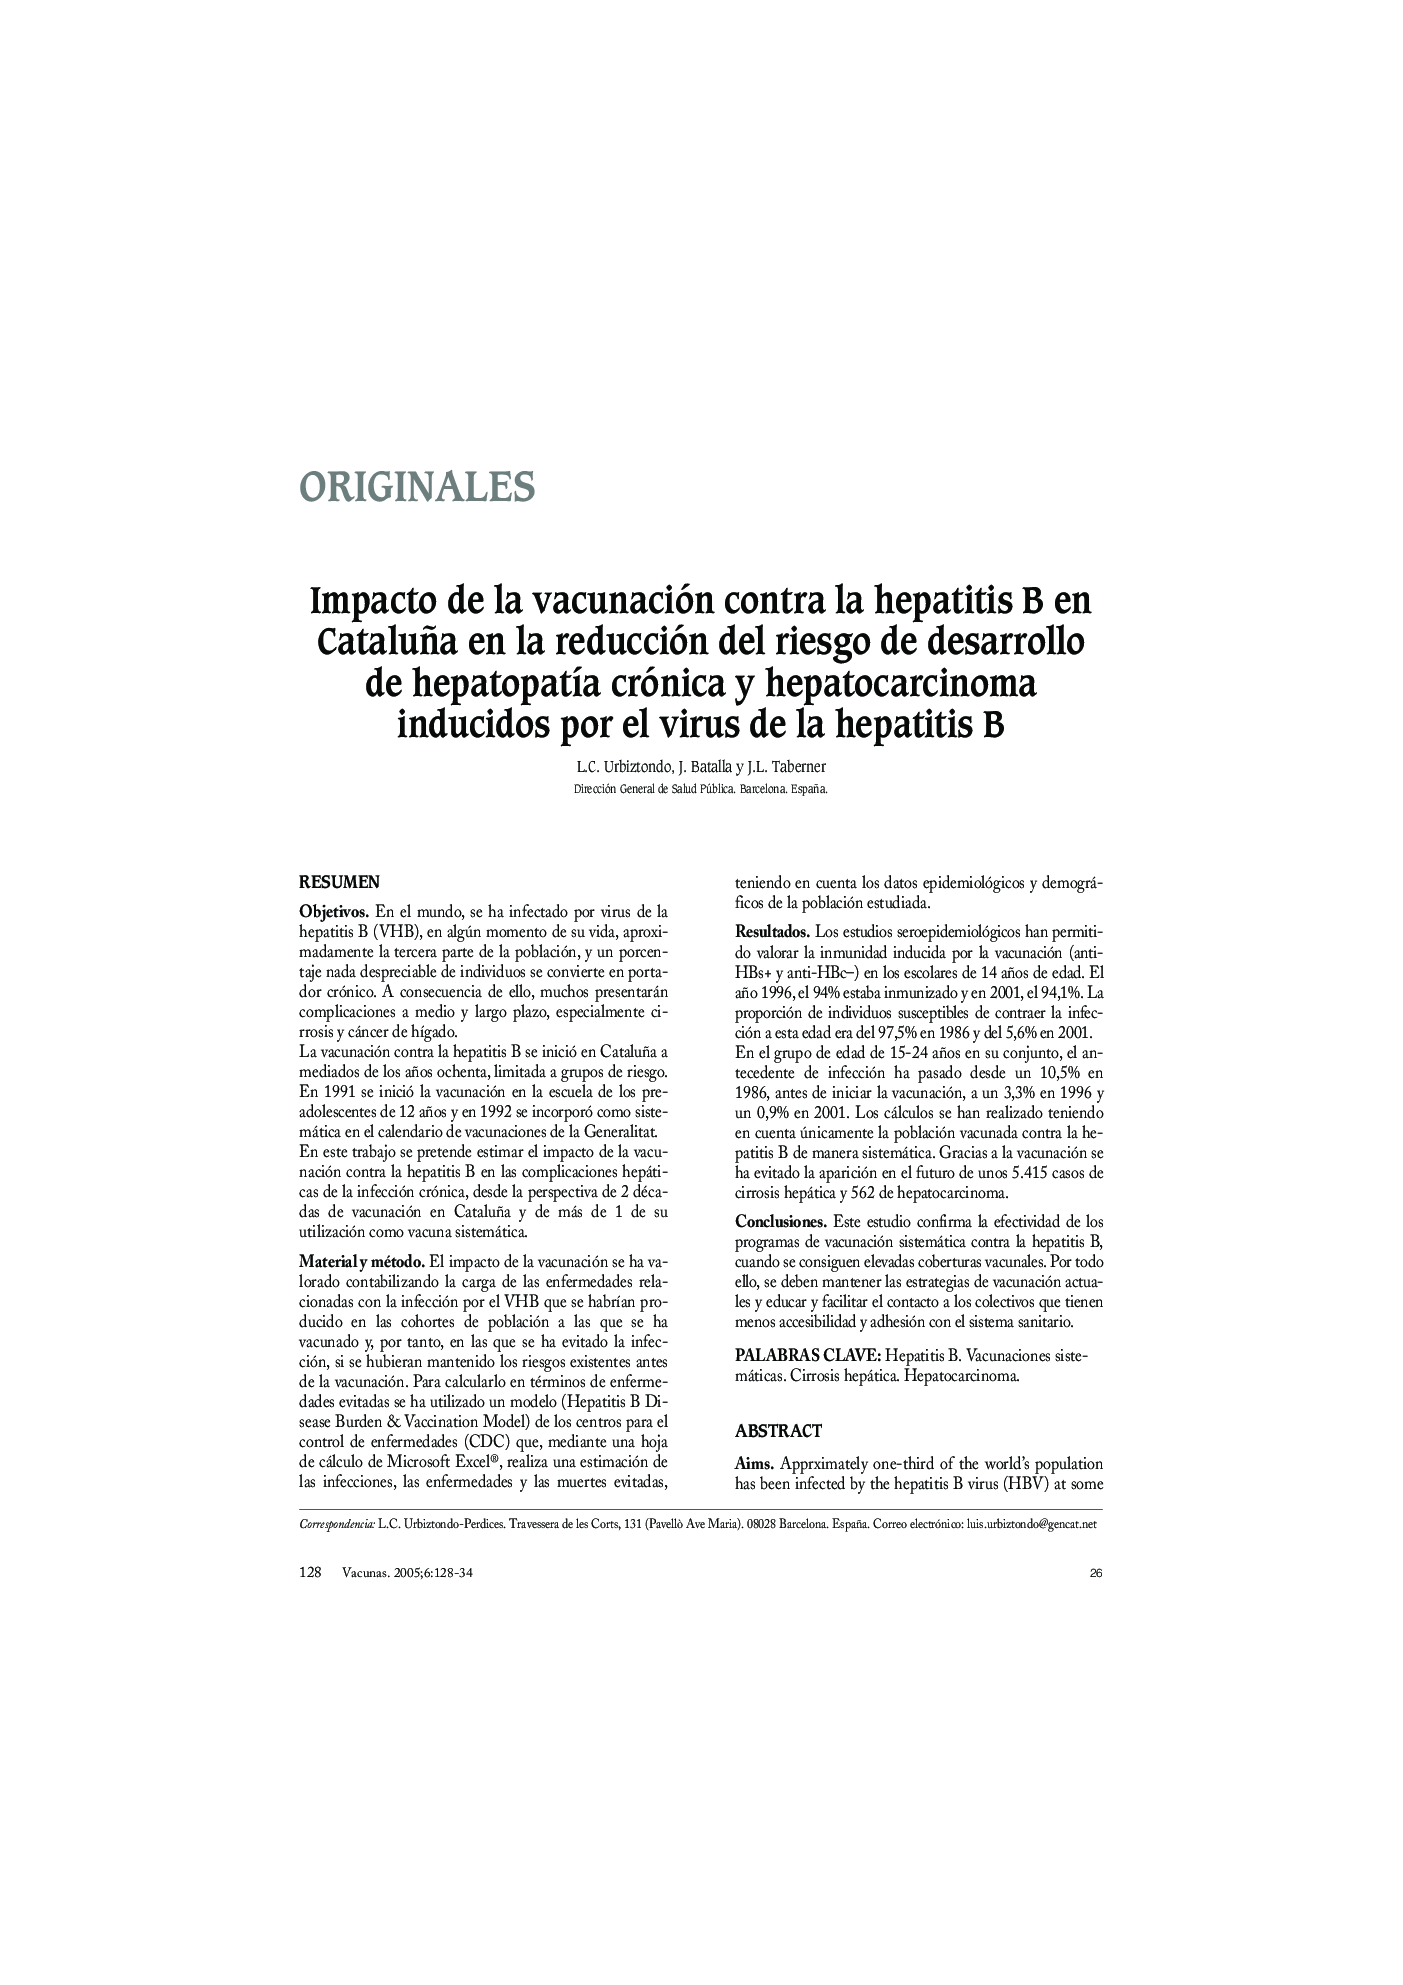 Impacto de la vacunación contra la hepatitis B en Cataluña en la reducción del riesgo de desarrollo de hepatopatÃ­a crónica y hepatocarcinoma inducidos por el virus de la hepatitis B